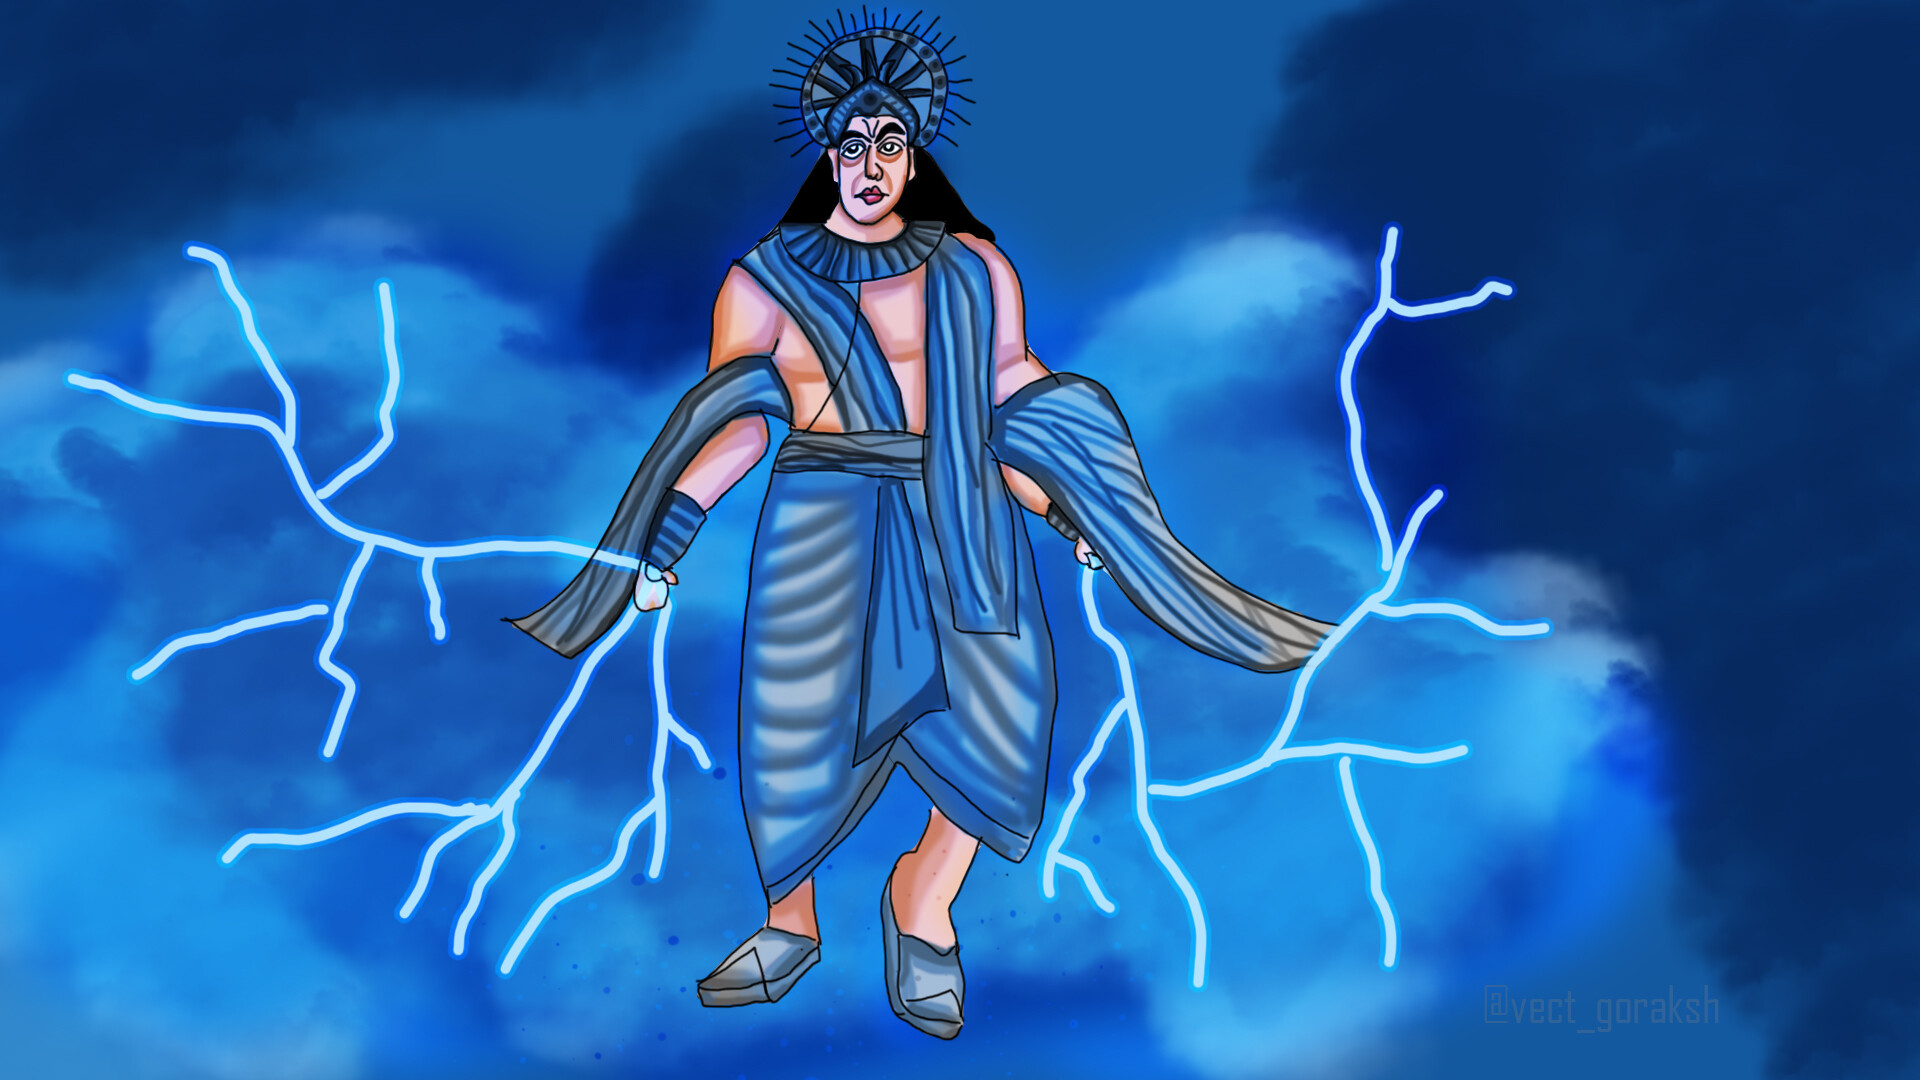 ArtStation - Indra deva the god of thunder